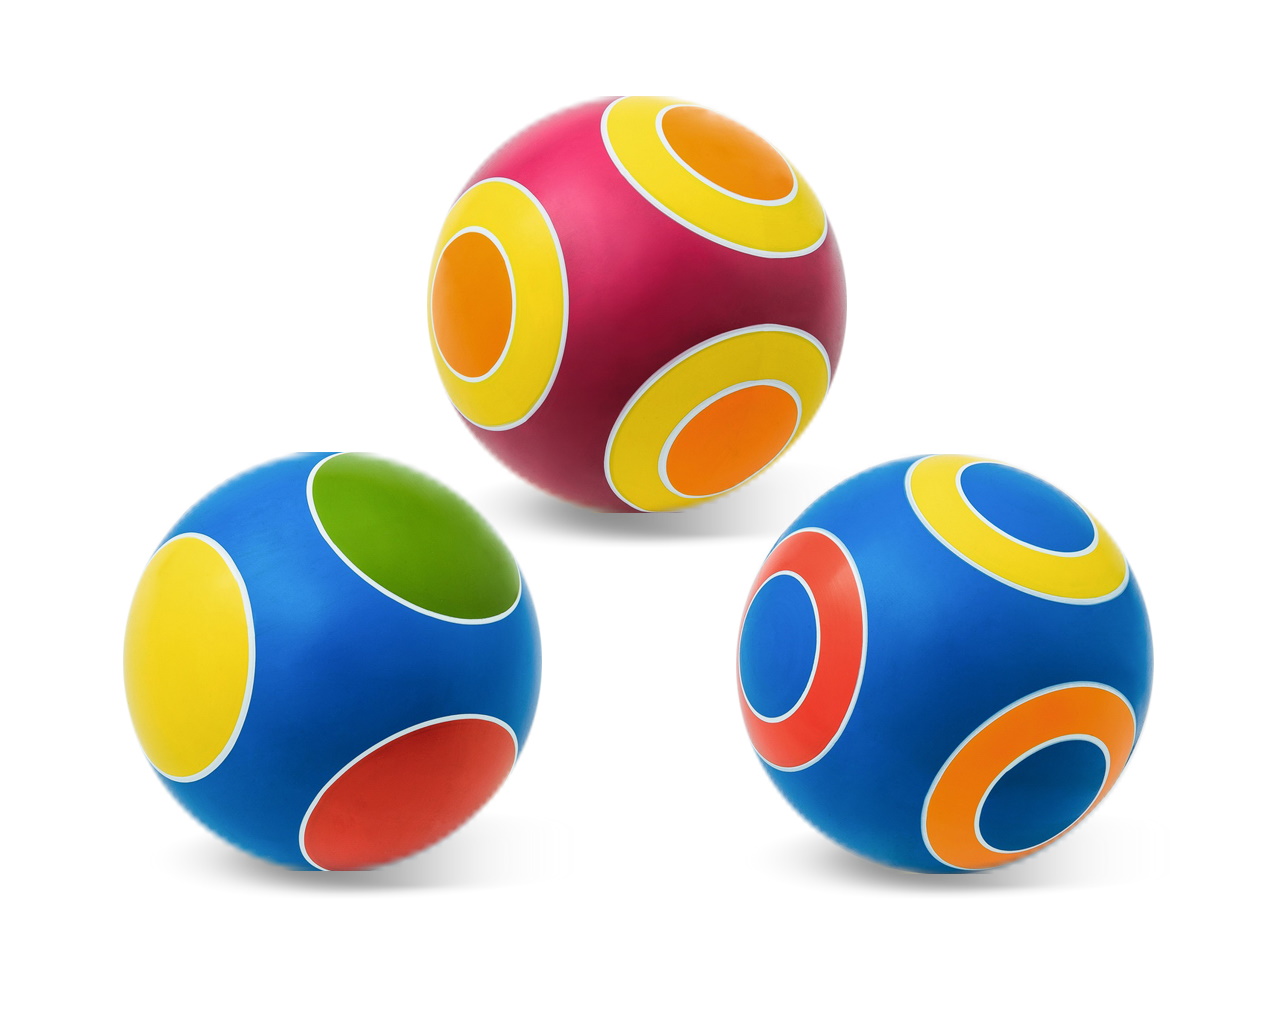 Мяч резиновый диаметр 150 мм. серия Кружочки, Чебоксары, Р3-150/Кр 